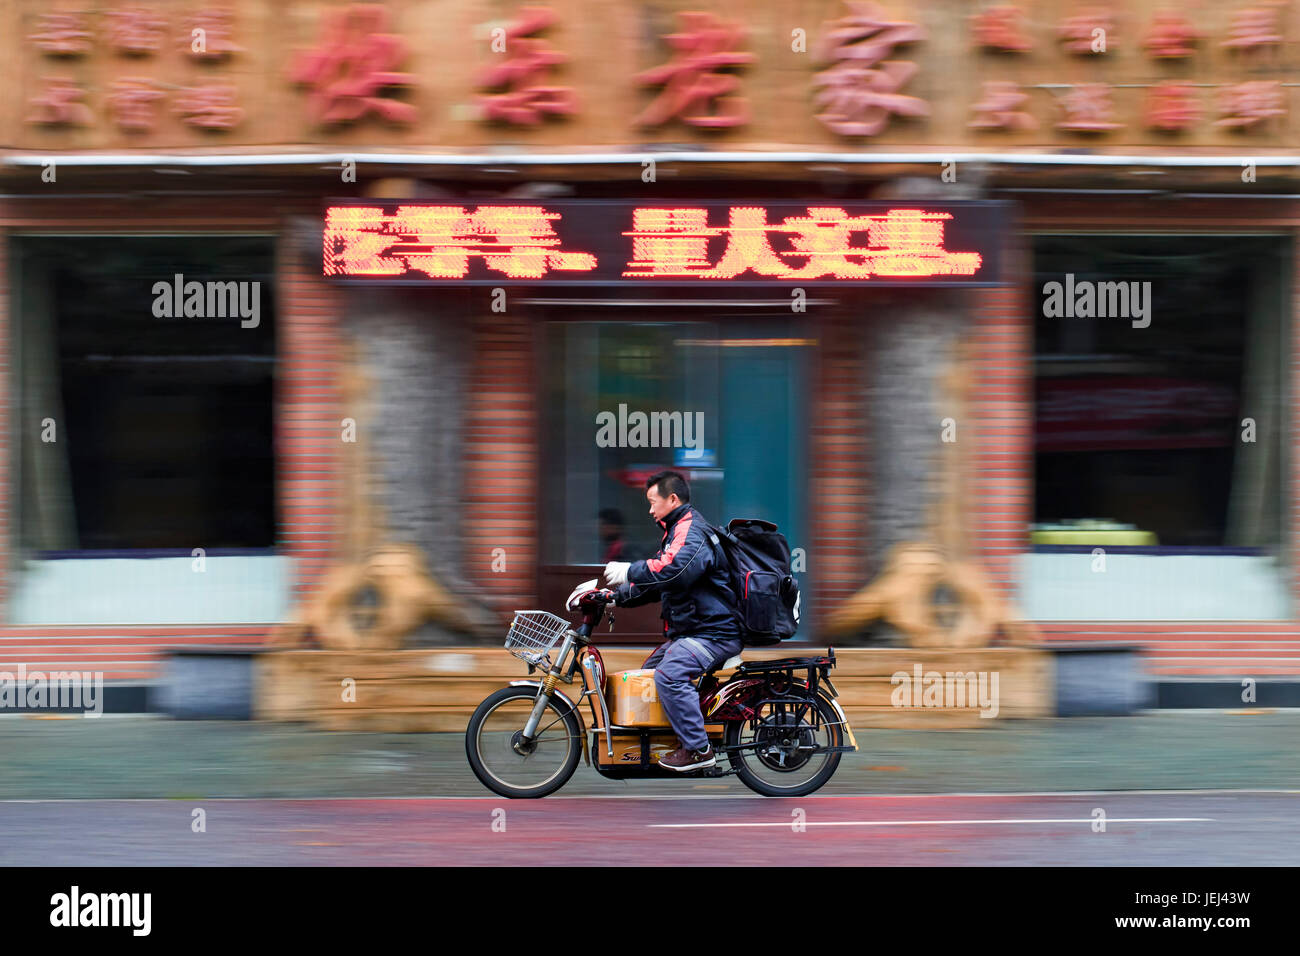 DALIAN-NOV 11, 2012. Mann auf einem Elektrofahrrad. Auf den Straßen chinesischer Städte wimmeln Elektrofahrräder. Etwa 120 Millionen davon sind dort. Stockfoto